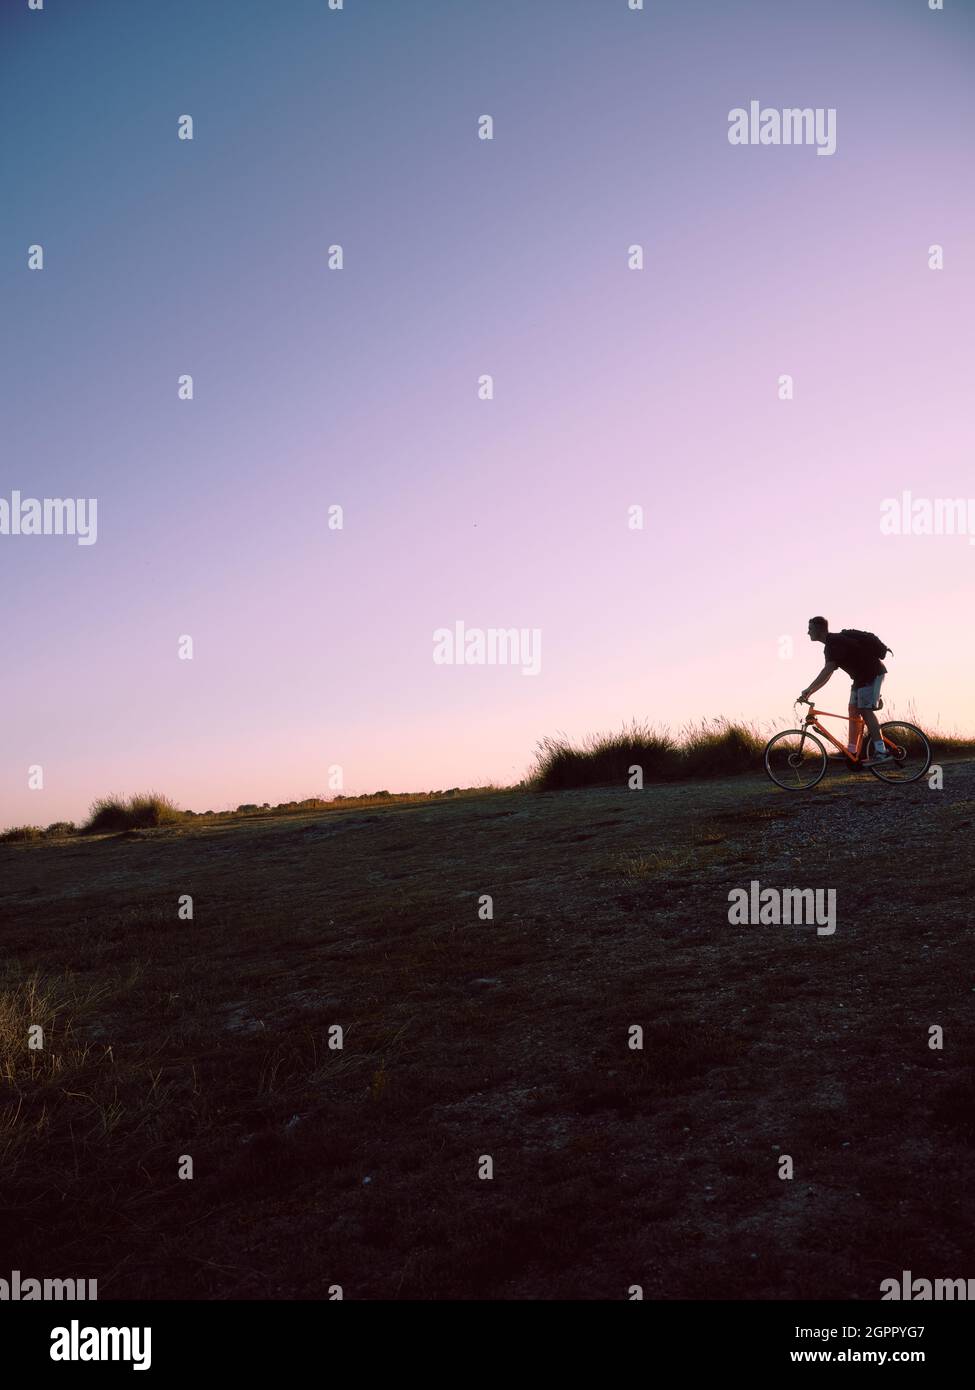 Ein einmotoriger Mountainbike-Radfahrer hinterleuchtet in den späten Abend Sommer grasbewachsenen Landschaft und Himmel - Offroad-Radfahren - Copy Space - einmotorige Radler Landschaft Stockfoto